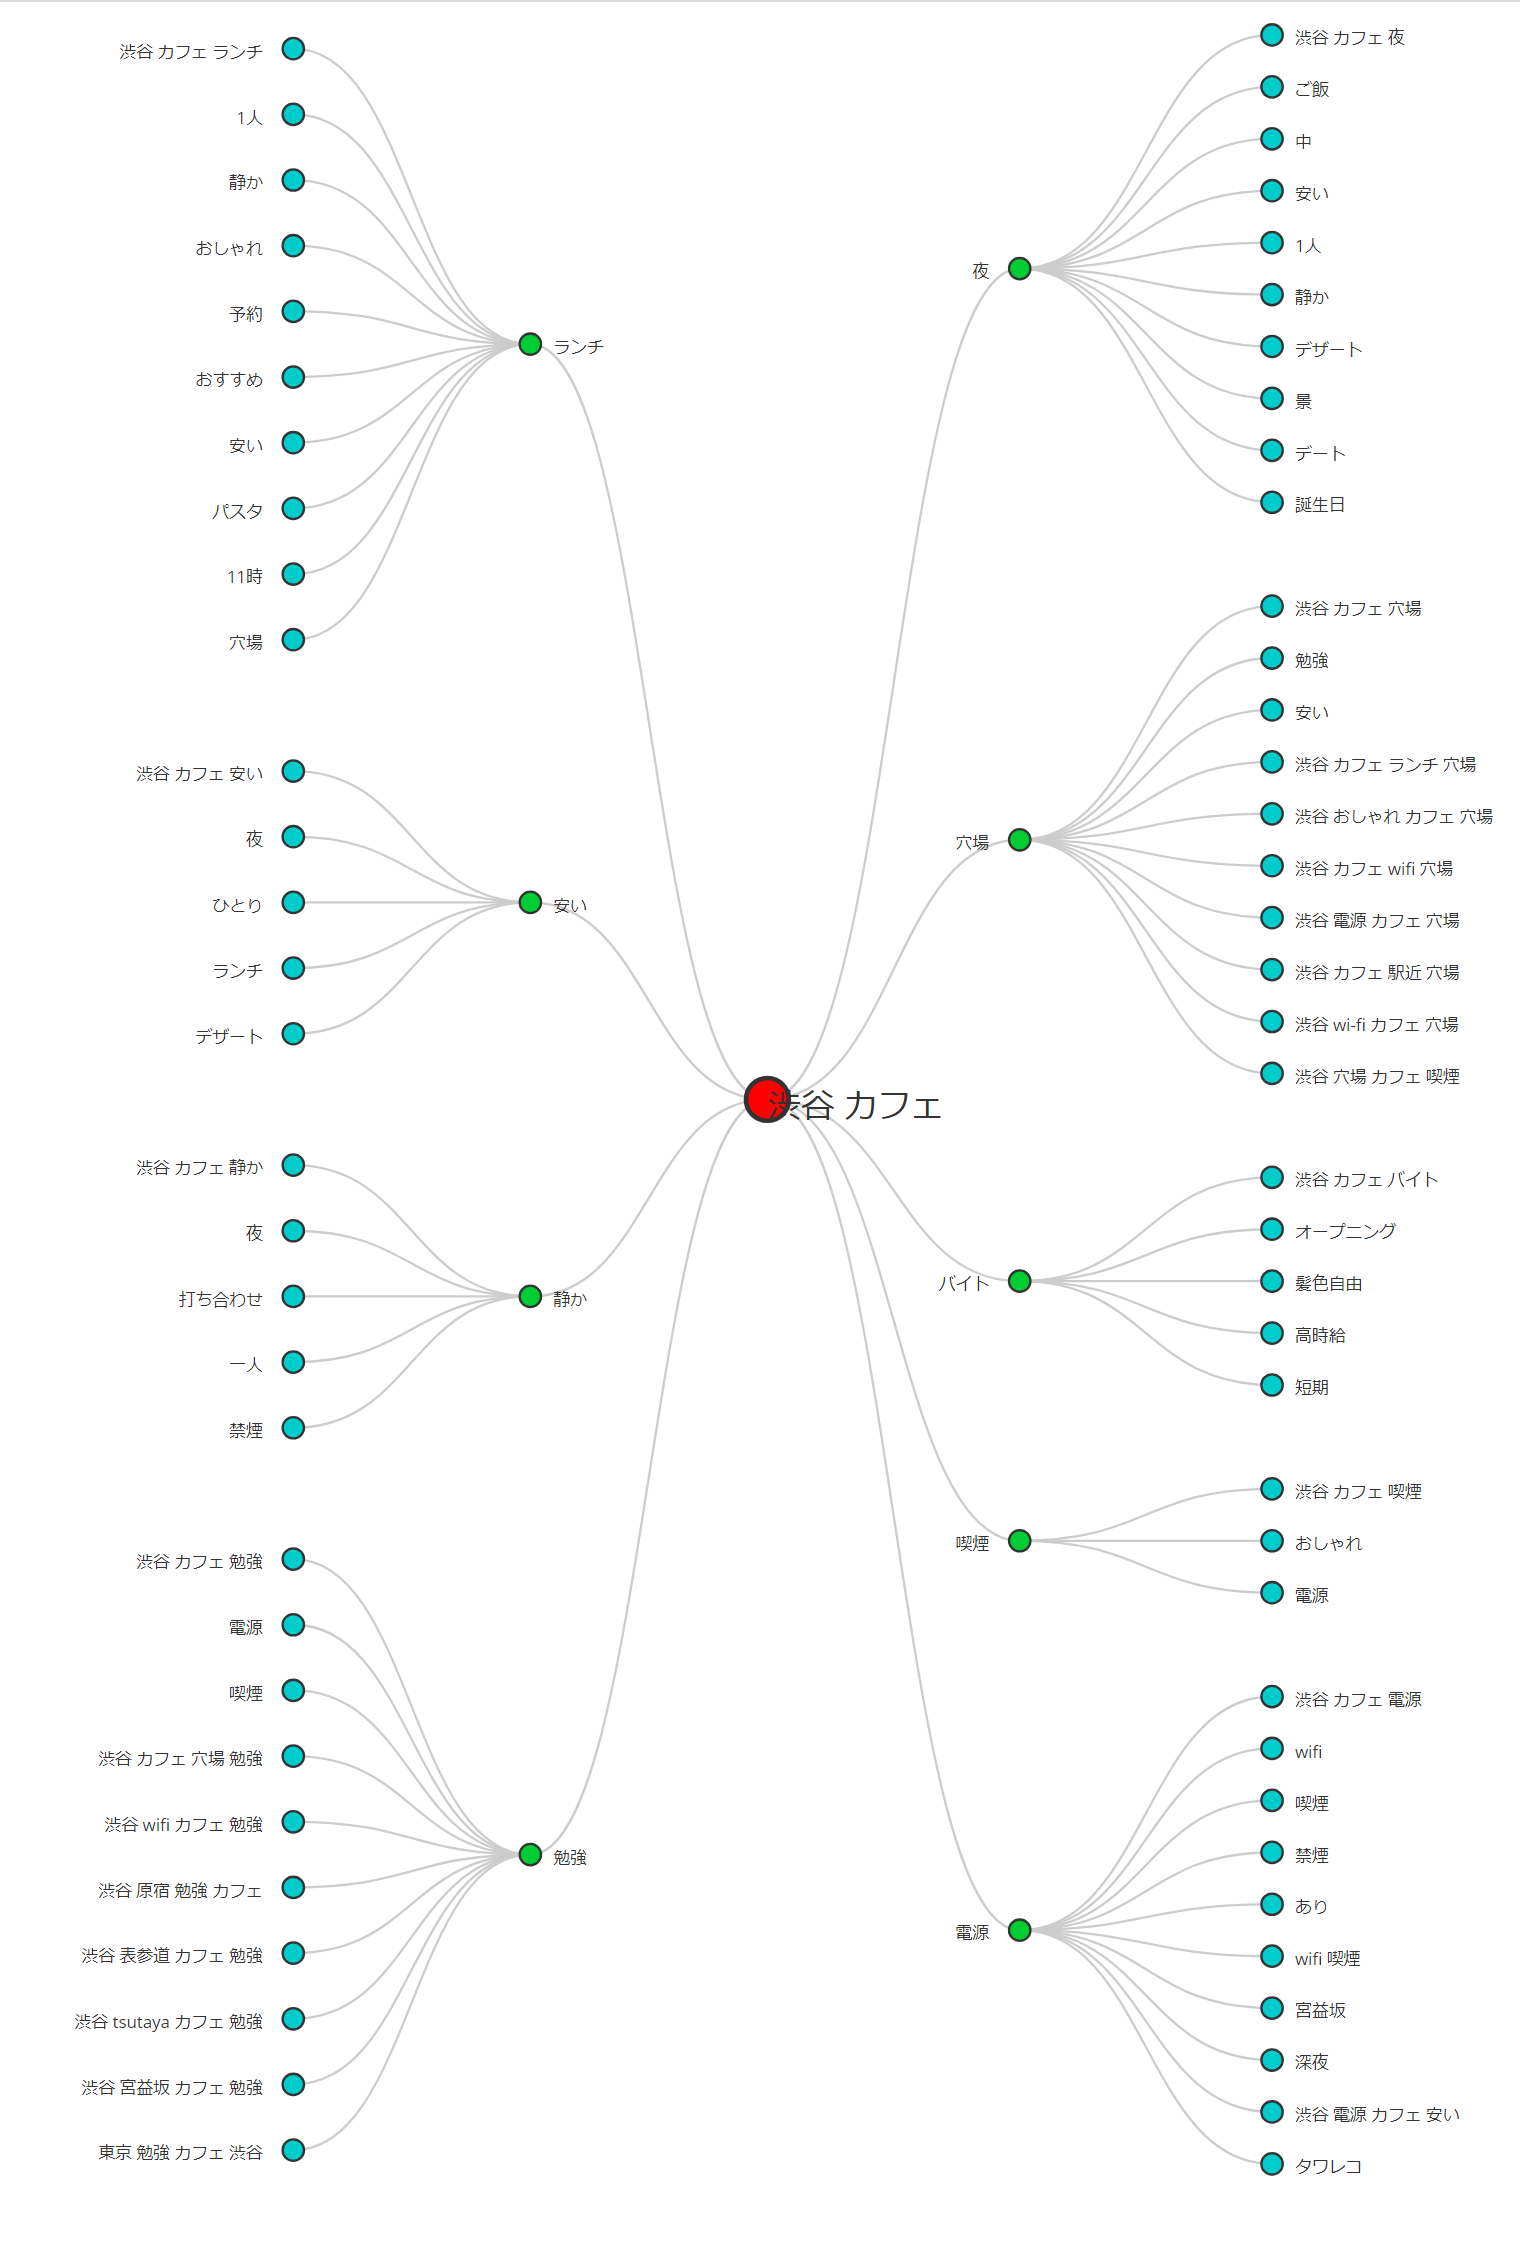 keysearchで作成した渋谷カフェのキーワードマップ